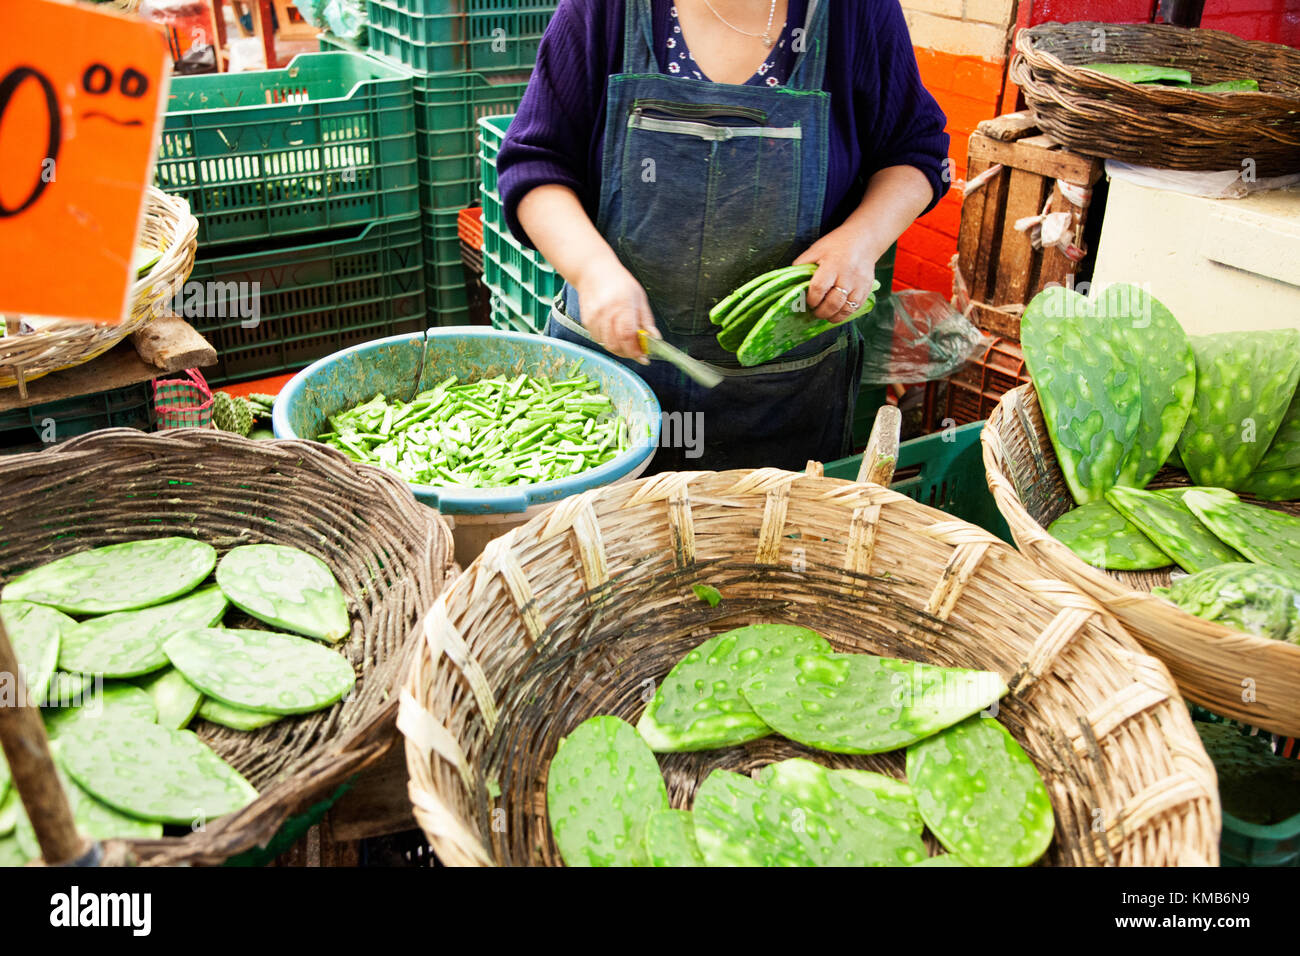 Nopales, cactus Opuntia, estar preparados para la venta en la Ciudad de México, el Mercado de la Merced. Foto de stock